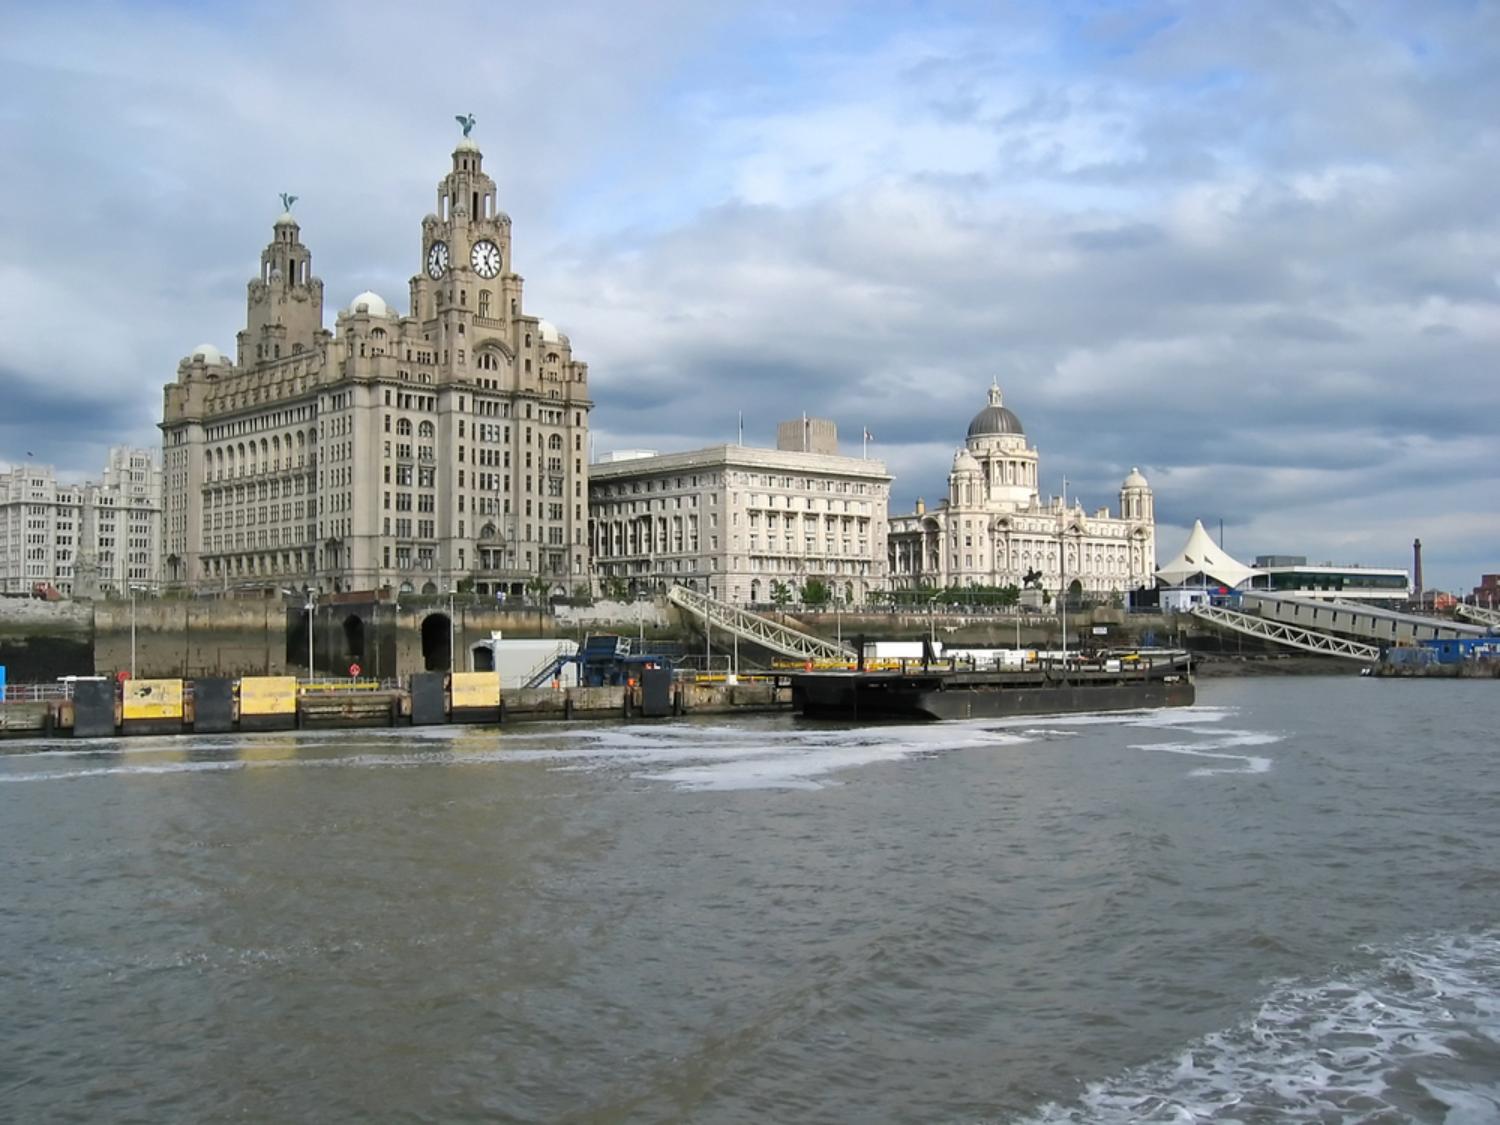 Visita livre de Liverpool seguindo os passos dos Beatles, partindo de Londres